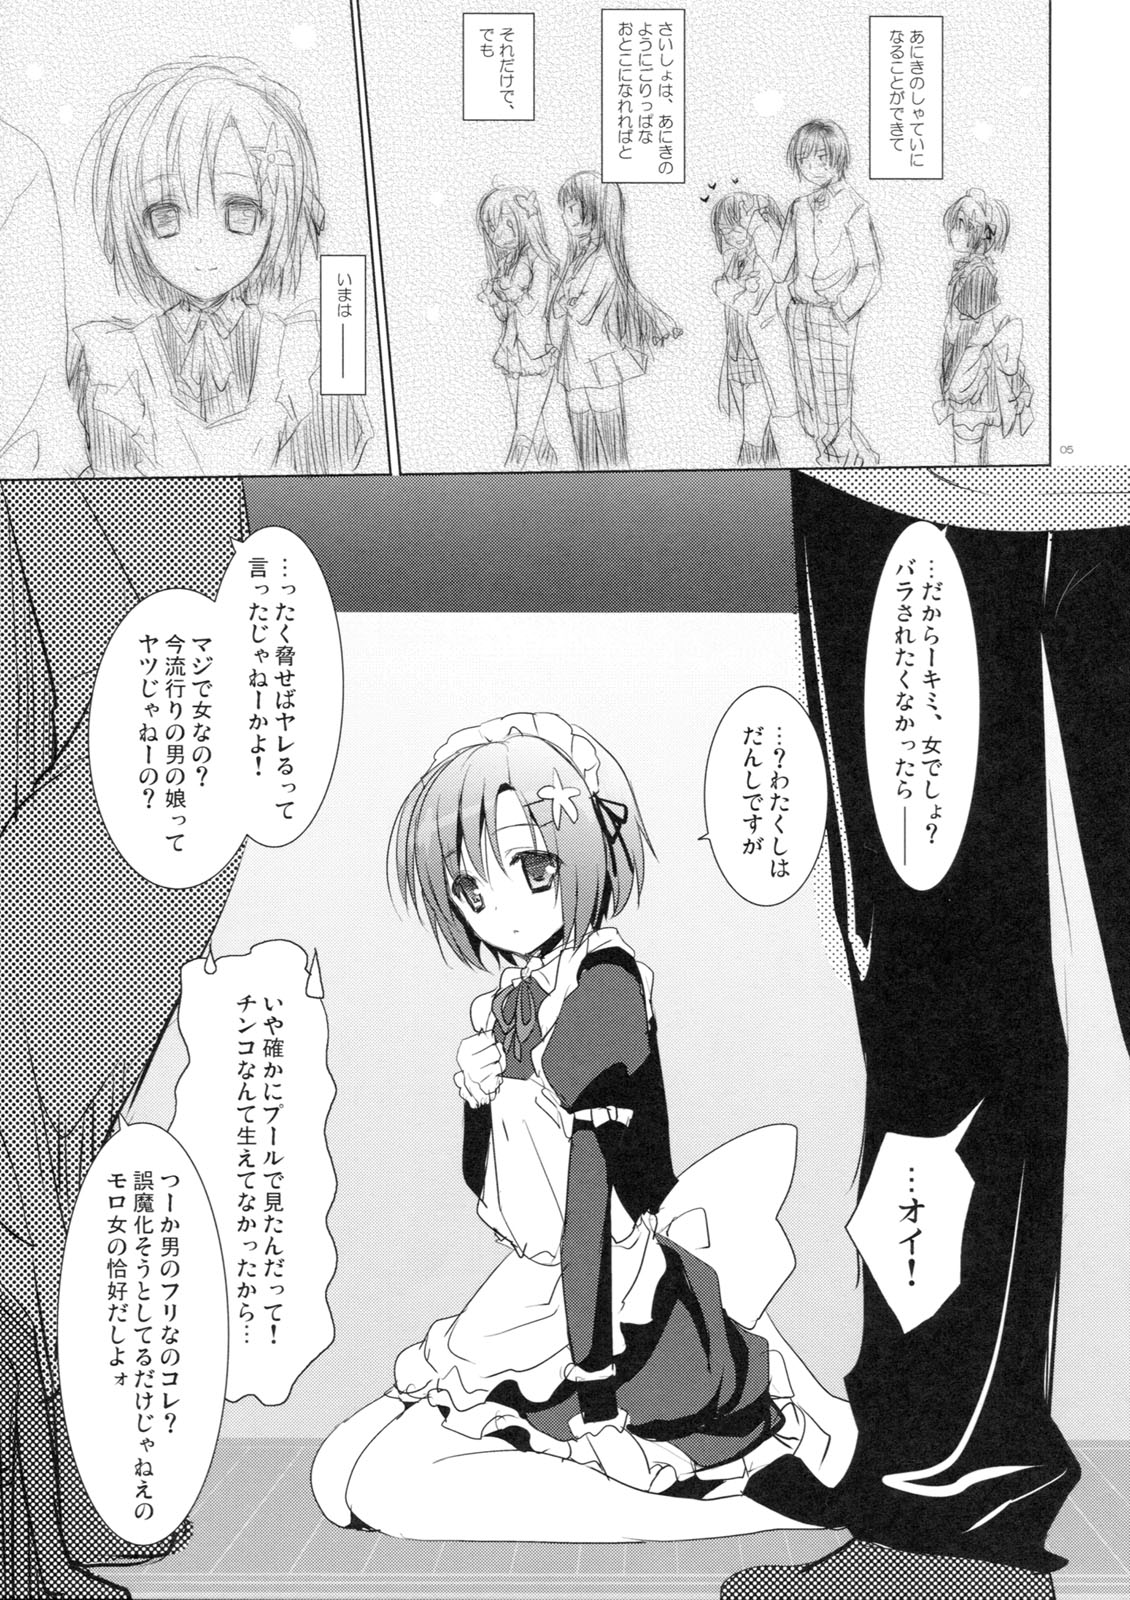 (SC53) [SEM;COLON (Mitsu King)] Sayonara, Aniki (Boku wa Tomodachi ga Sukunai) page 4 full